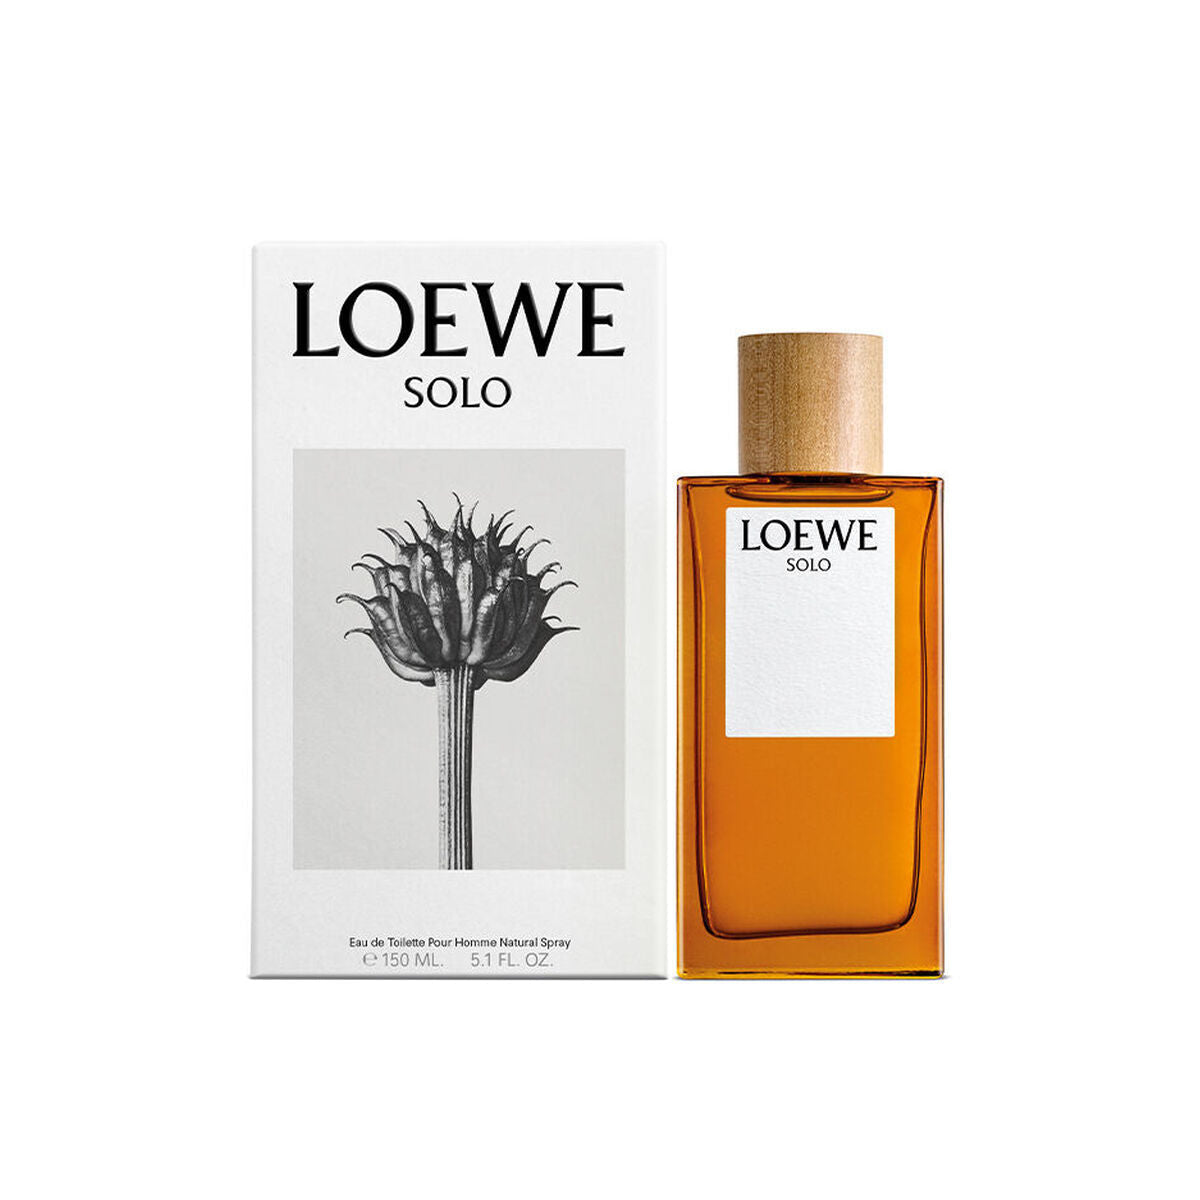 Kaufe Solo Loewe EDT Solo Loewe - Herren bei AWK Flagship um € 149.90